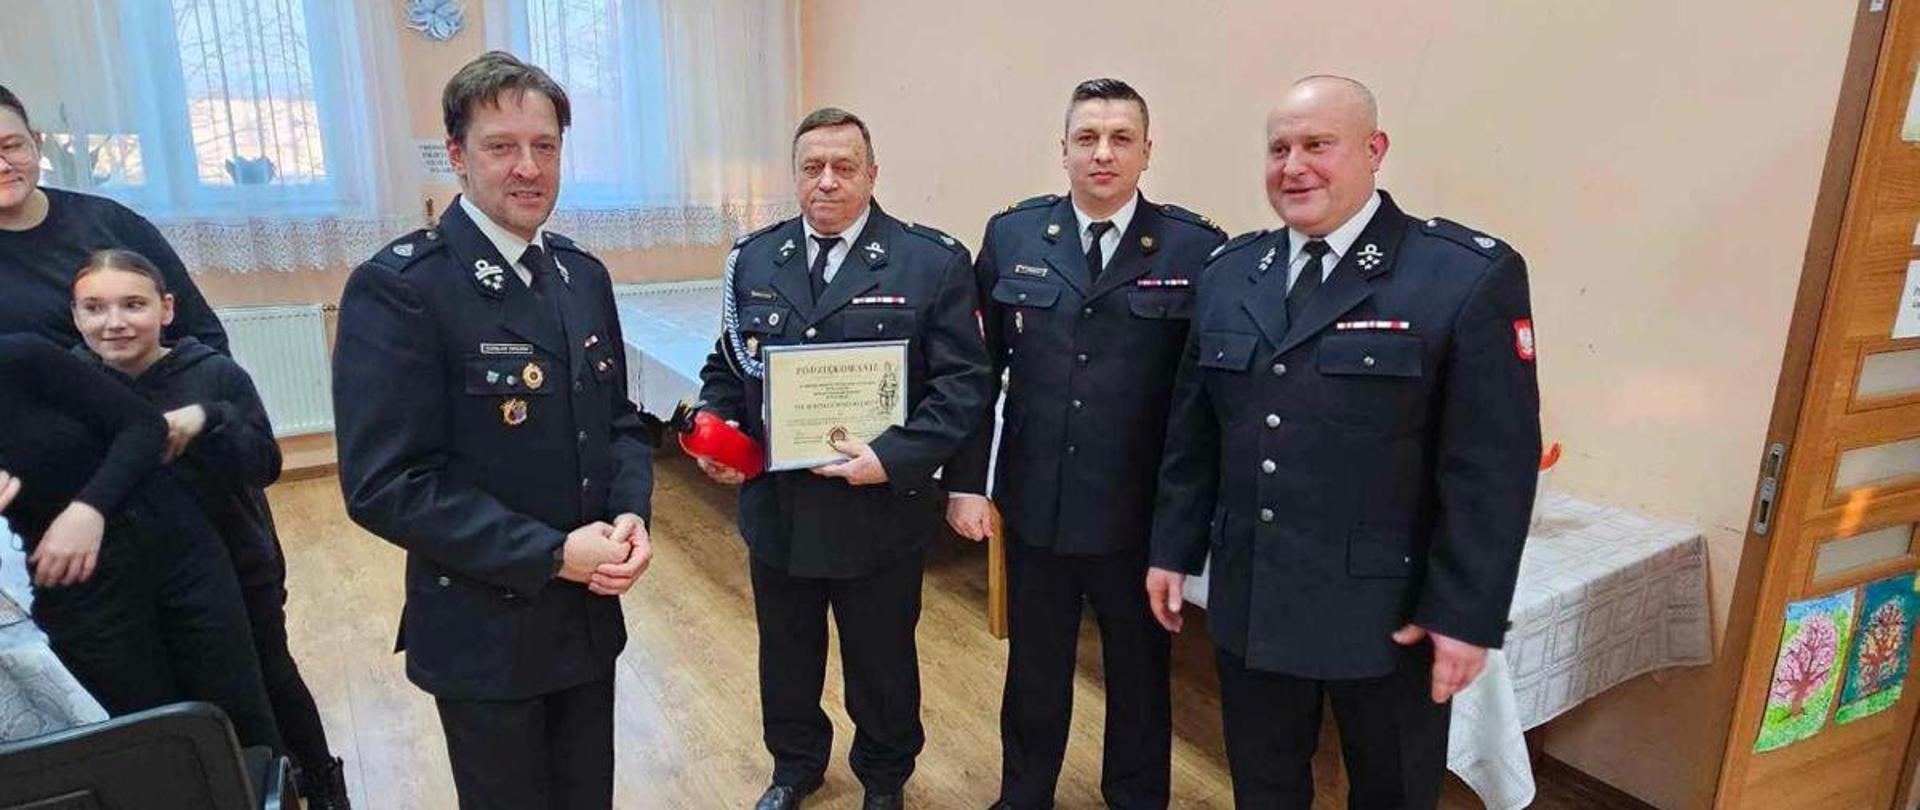 Zdjęcie przedstawia uczestników walnego zebrania sprawozdawczego w siedzibie Ochotniczej Straży Pożarnej w Łagowie